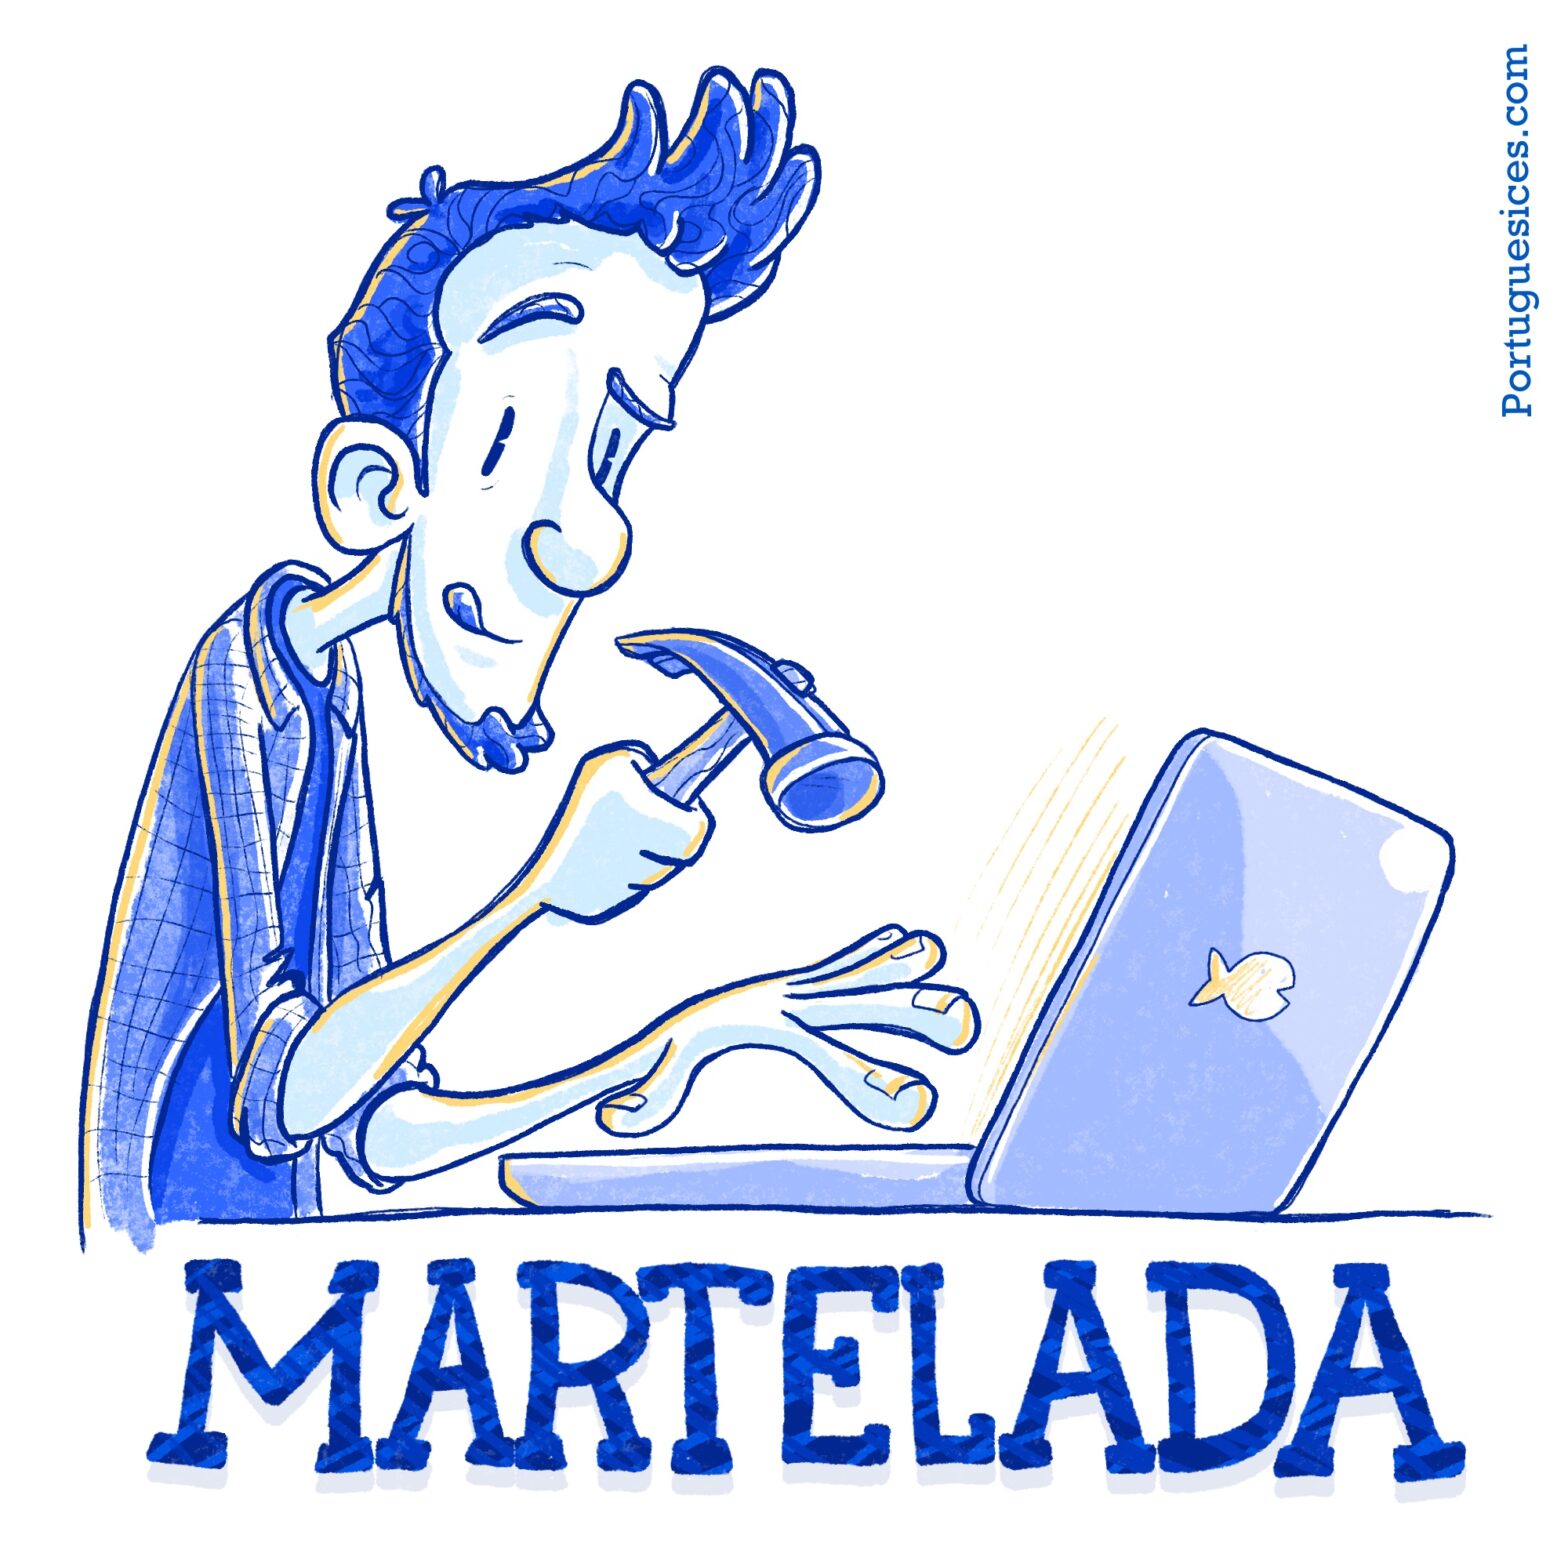 Martelada